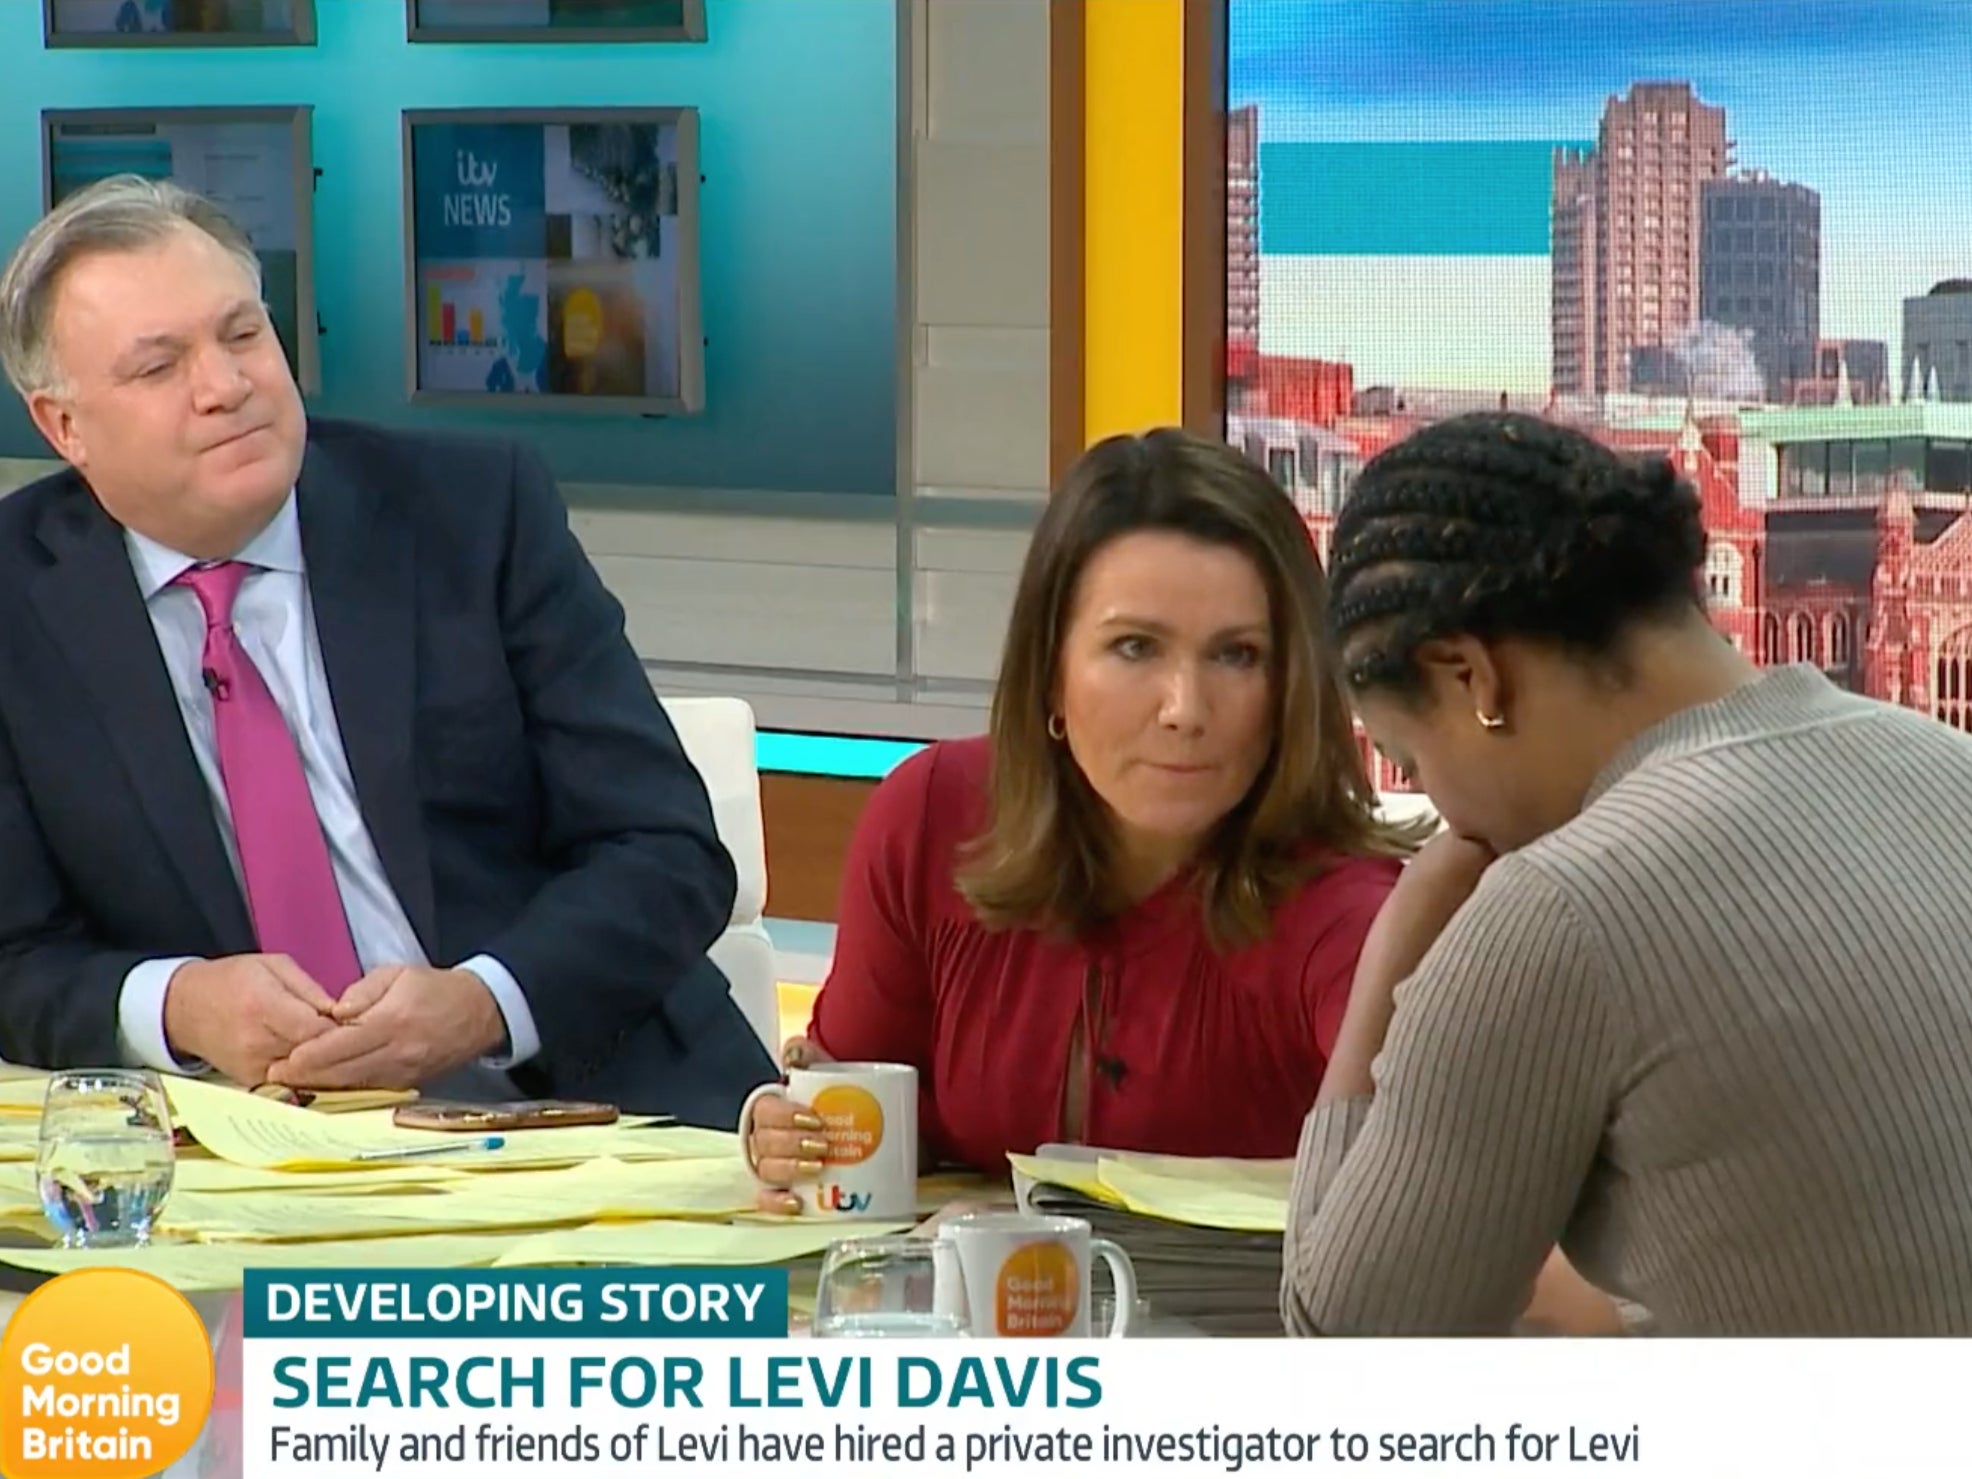 La madre de Levi Davis ha pedido a la gente y a la prensa que eviten publicar teorías de conspiración